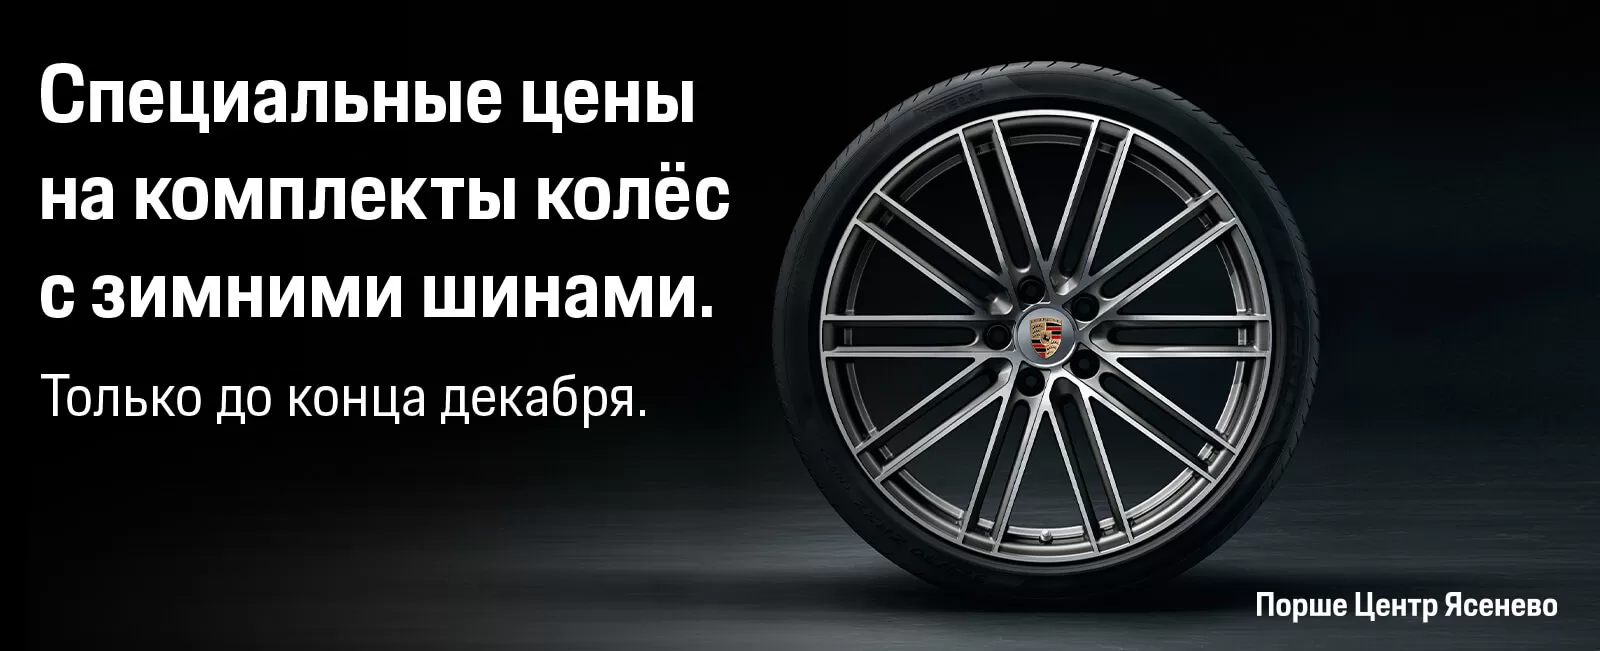 В этом месяце в Порше Центр Ясенево действуют специальные цены на комплекты колес в сборе с выгодой от 30% до 45%.